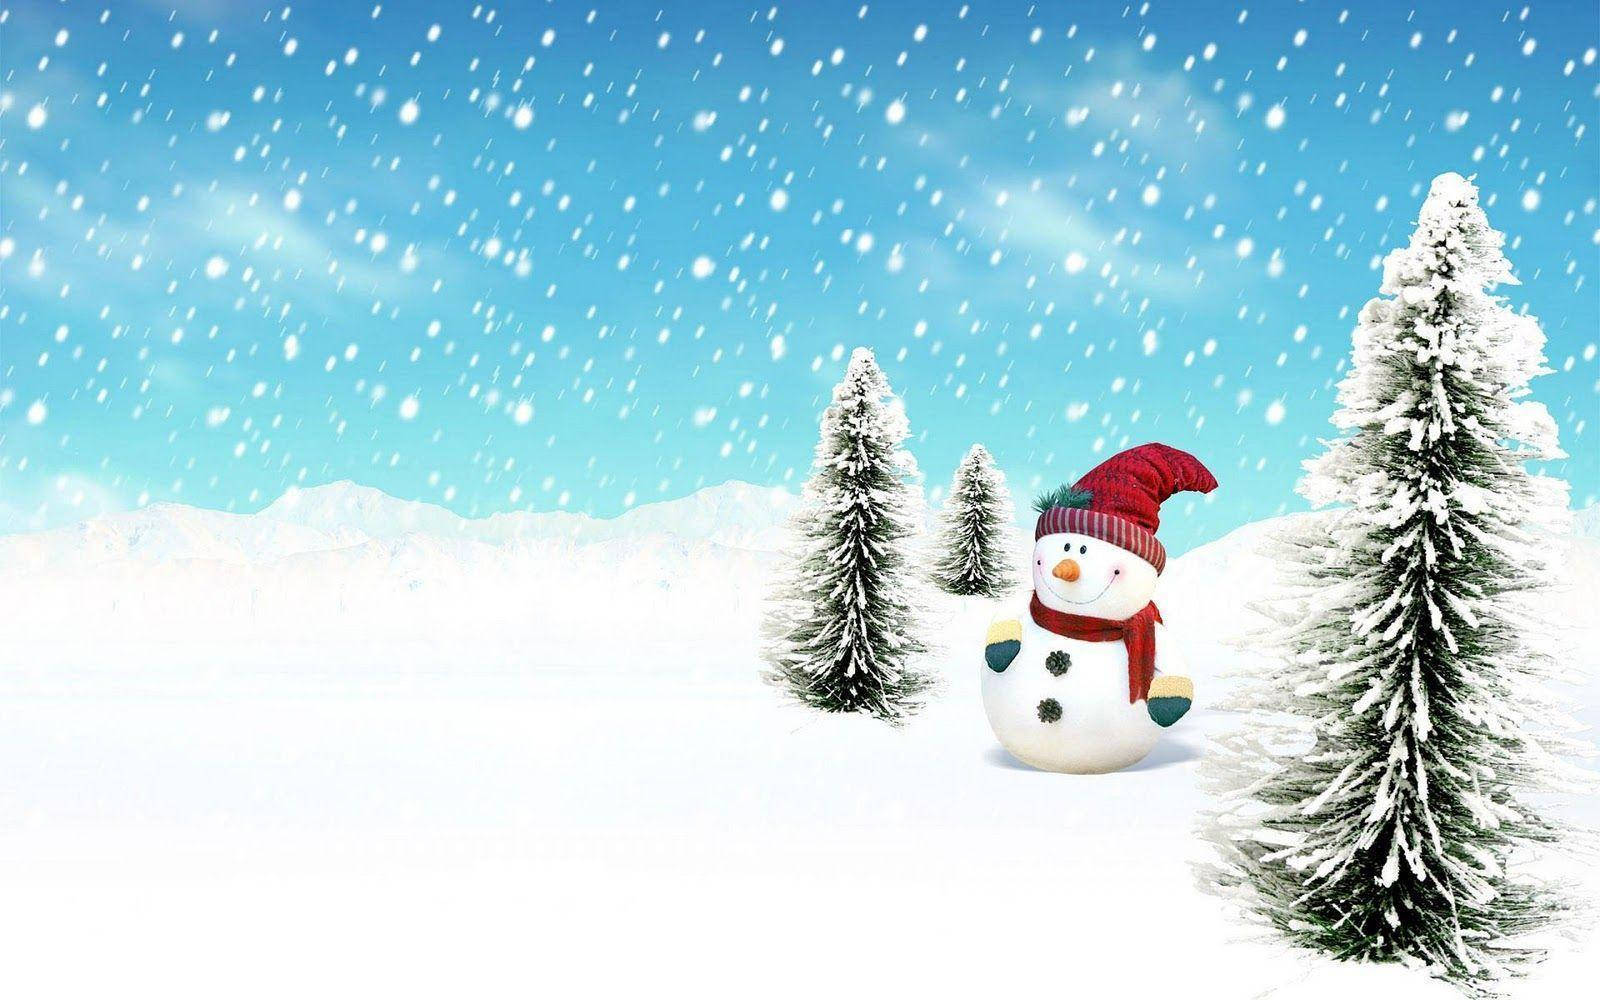 Snowman In Winter Field